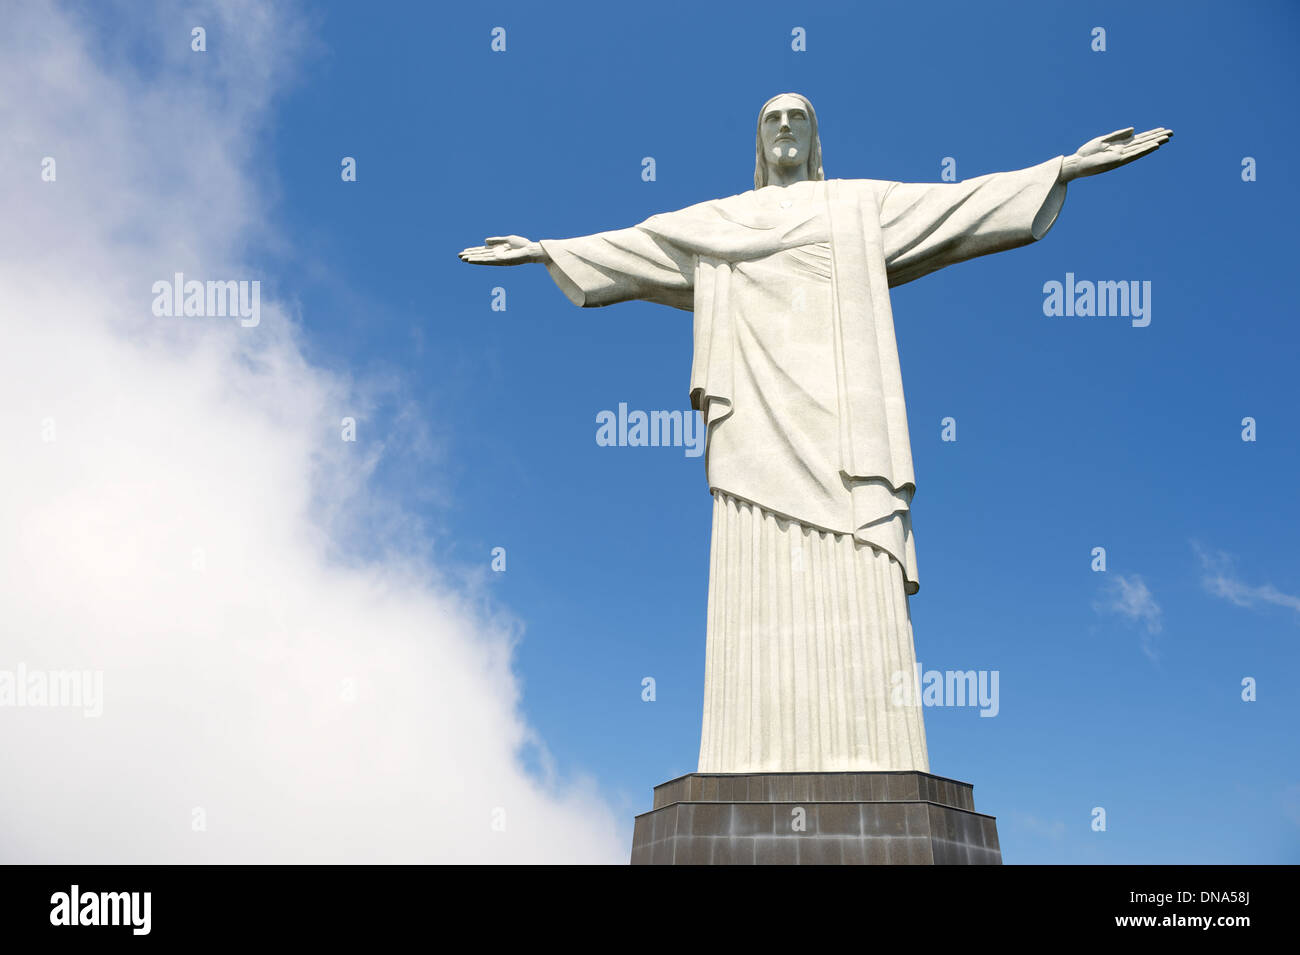 Meteo Corcovado Cristo Redentore sorge accanto alla nebbia di vorticazione nuvole a Rio de Janeiro in Brasile Foto Stock